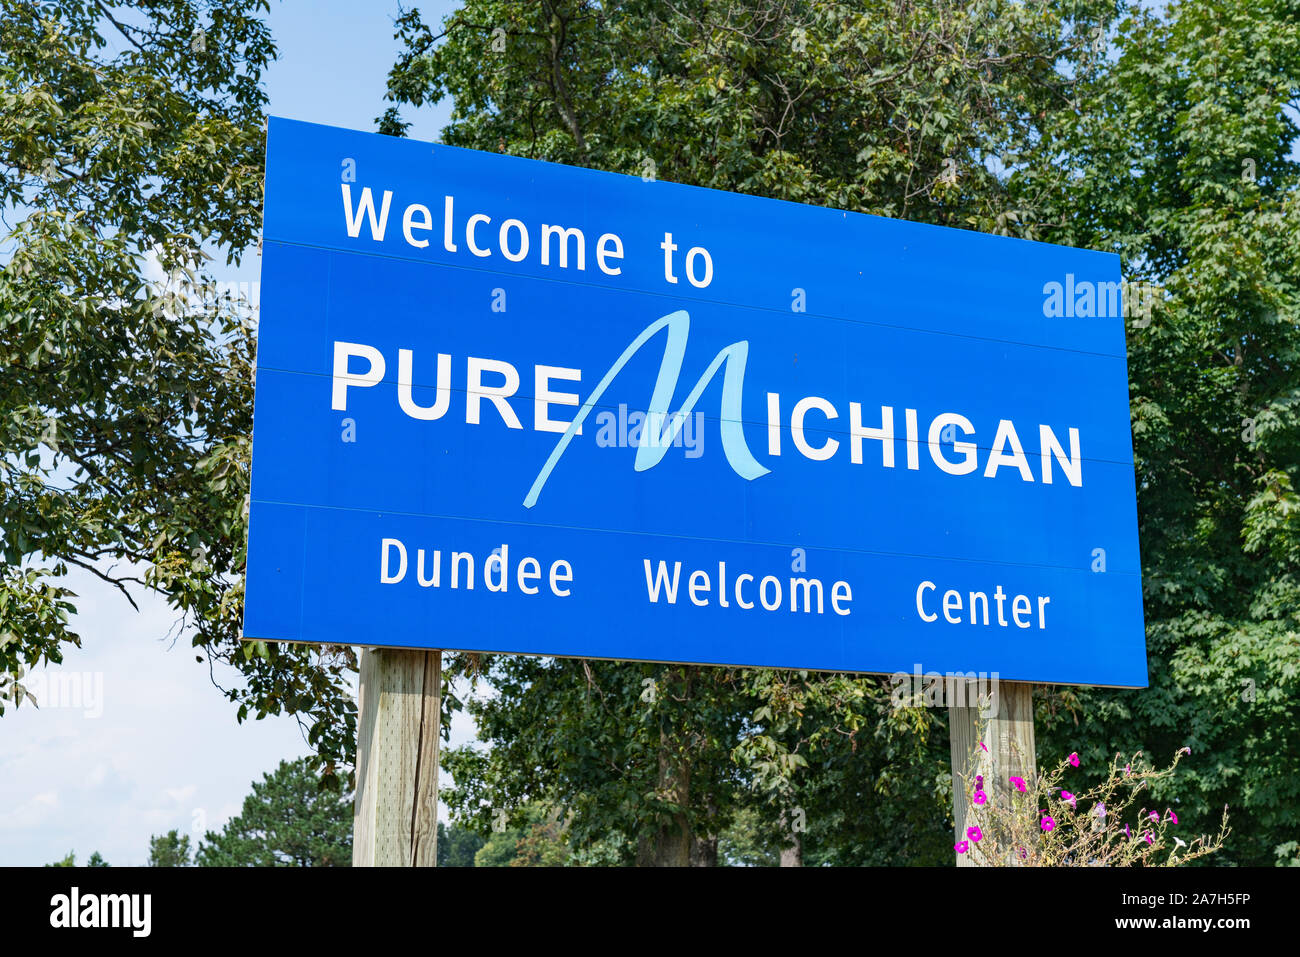 Pietroburgo, MI - Settembre 21, 2019: Benvenuti a puro segno del Michigan a Dundee Welcome Center Foto Stock